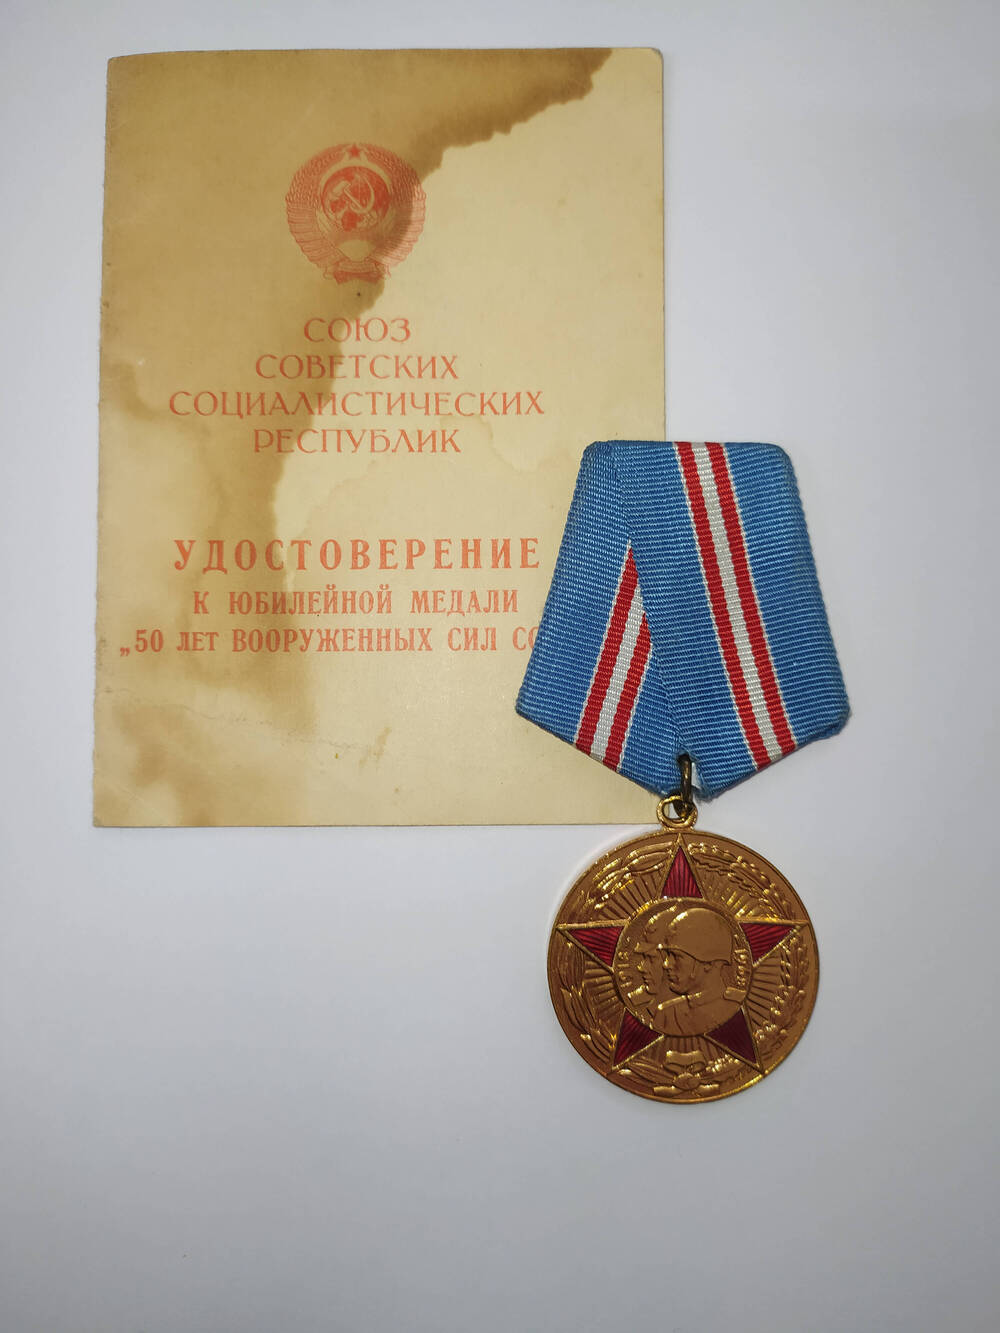 Юбилейная медаль 50 лет Вооруженных сил СССР, Никитенко (Мельникова) Анны Романовны